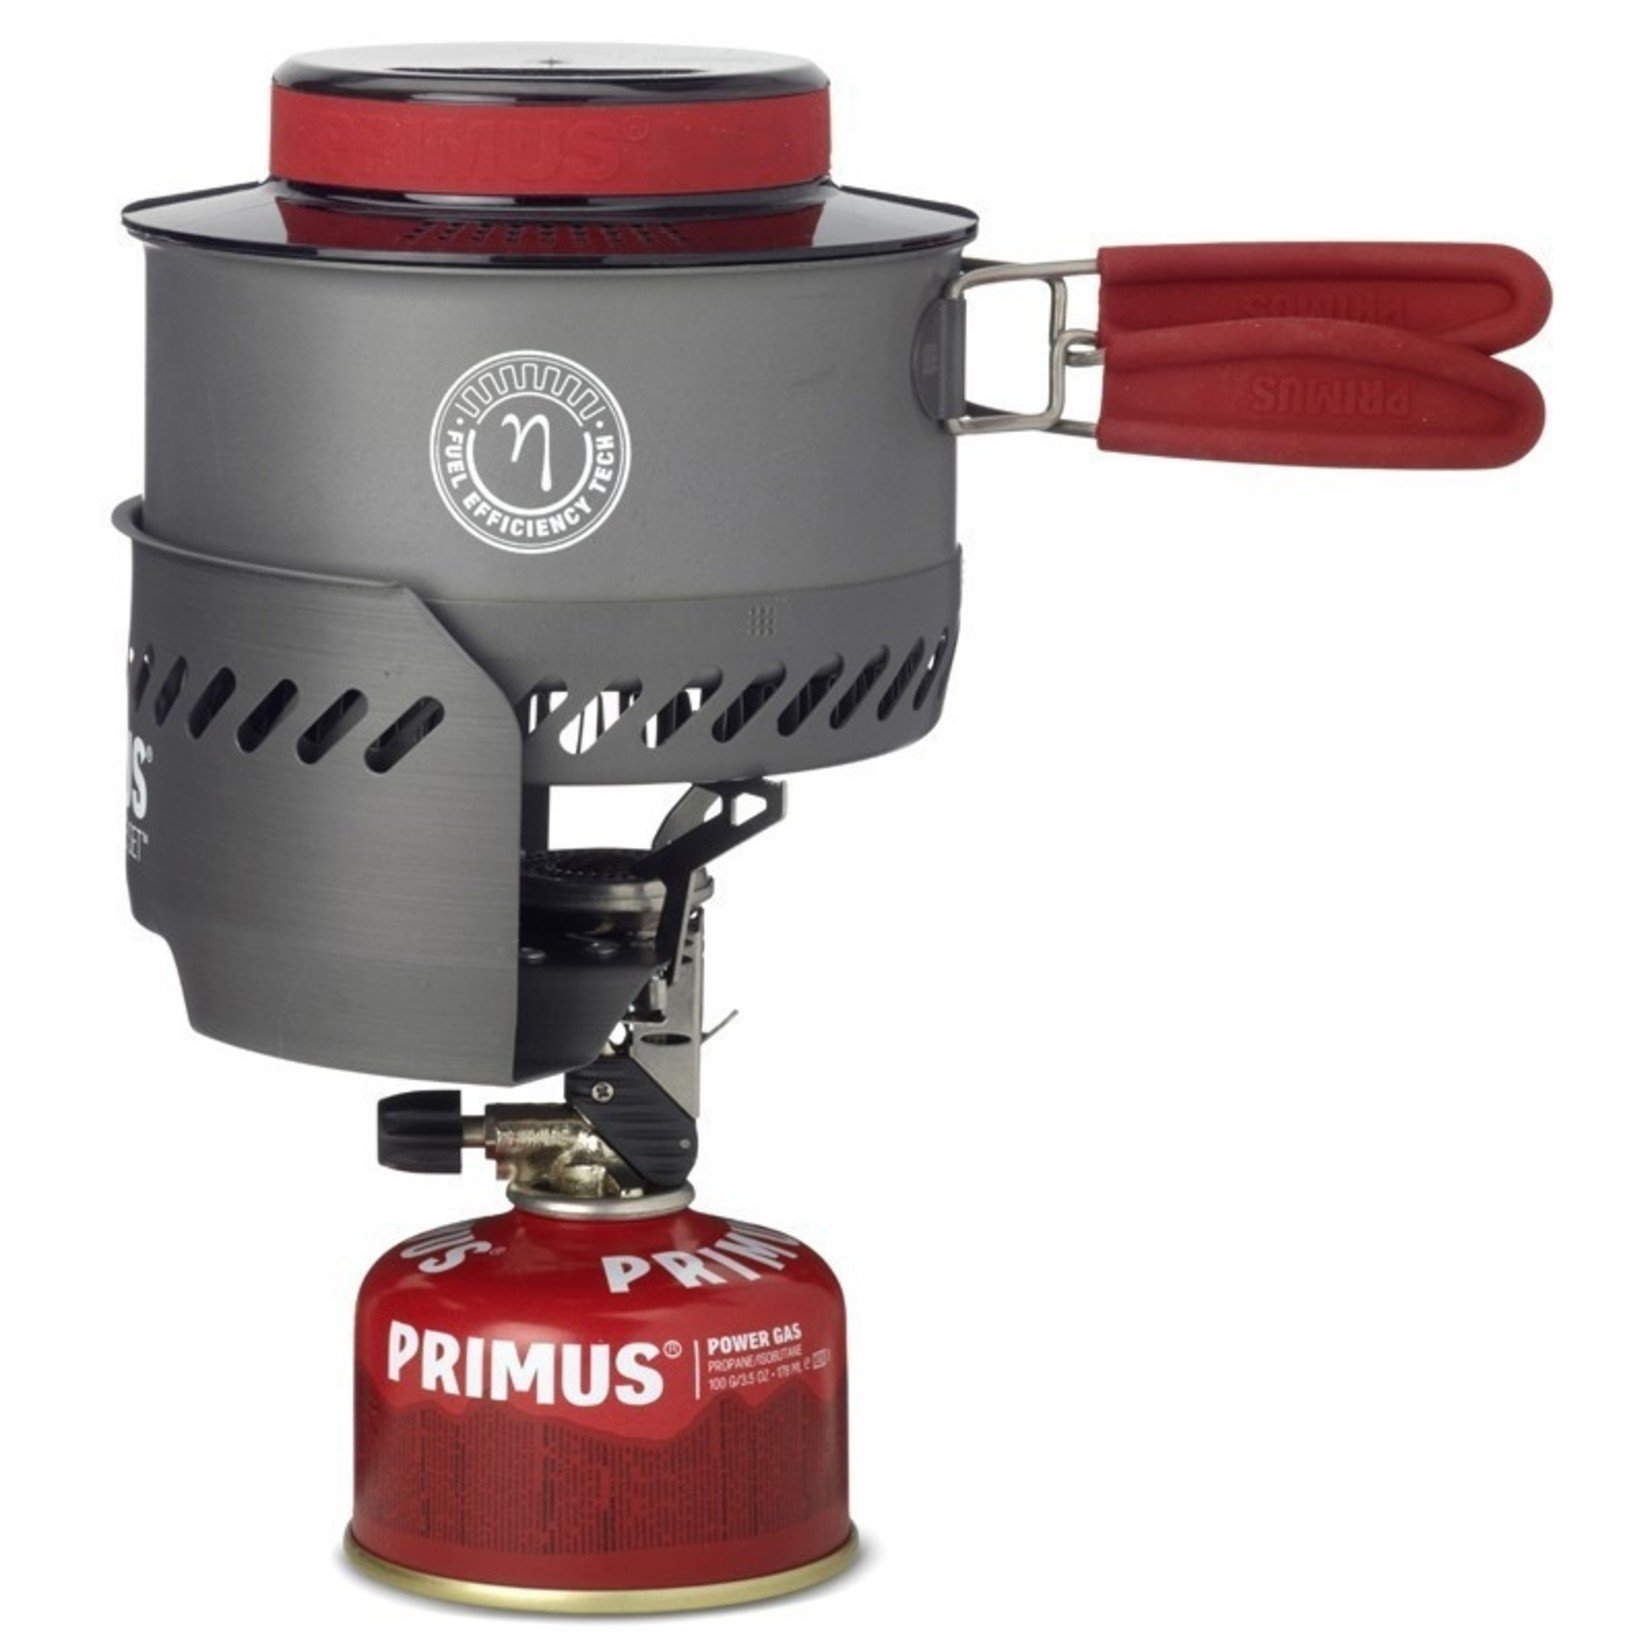 Primus Primus Express stove set met piezo, nieuwe PrimeTech pot